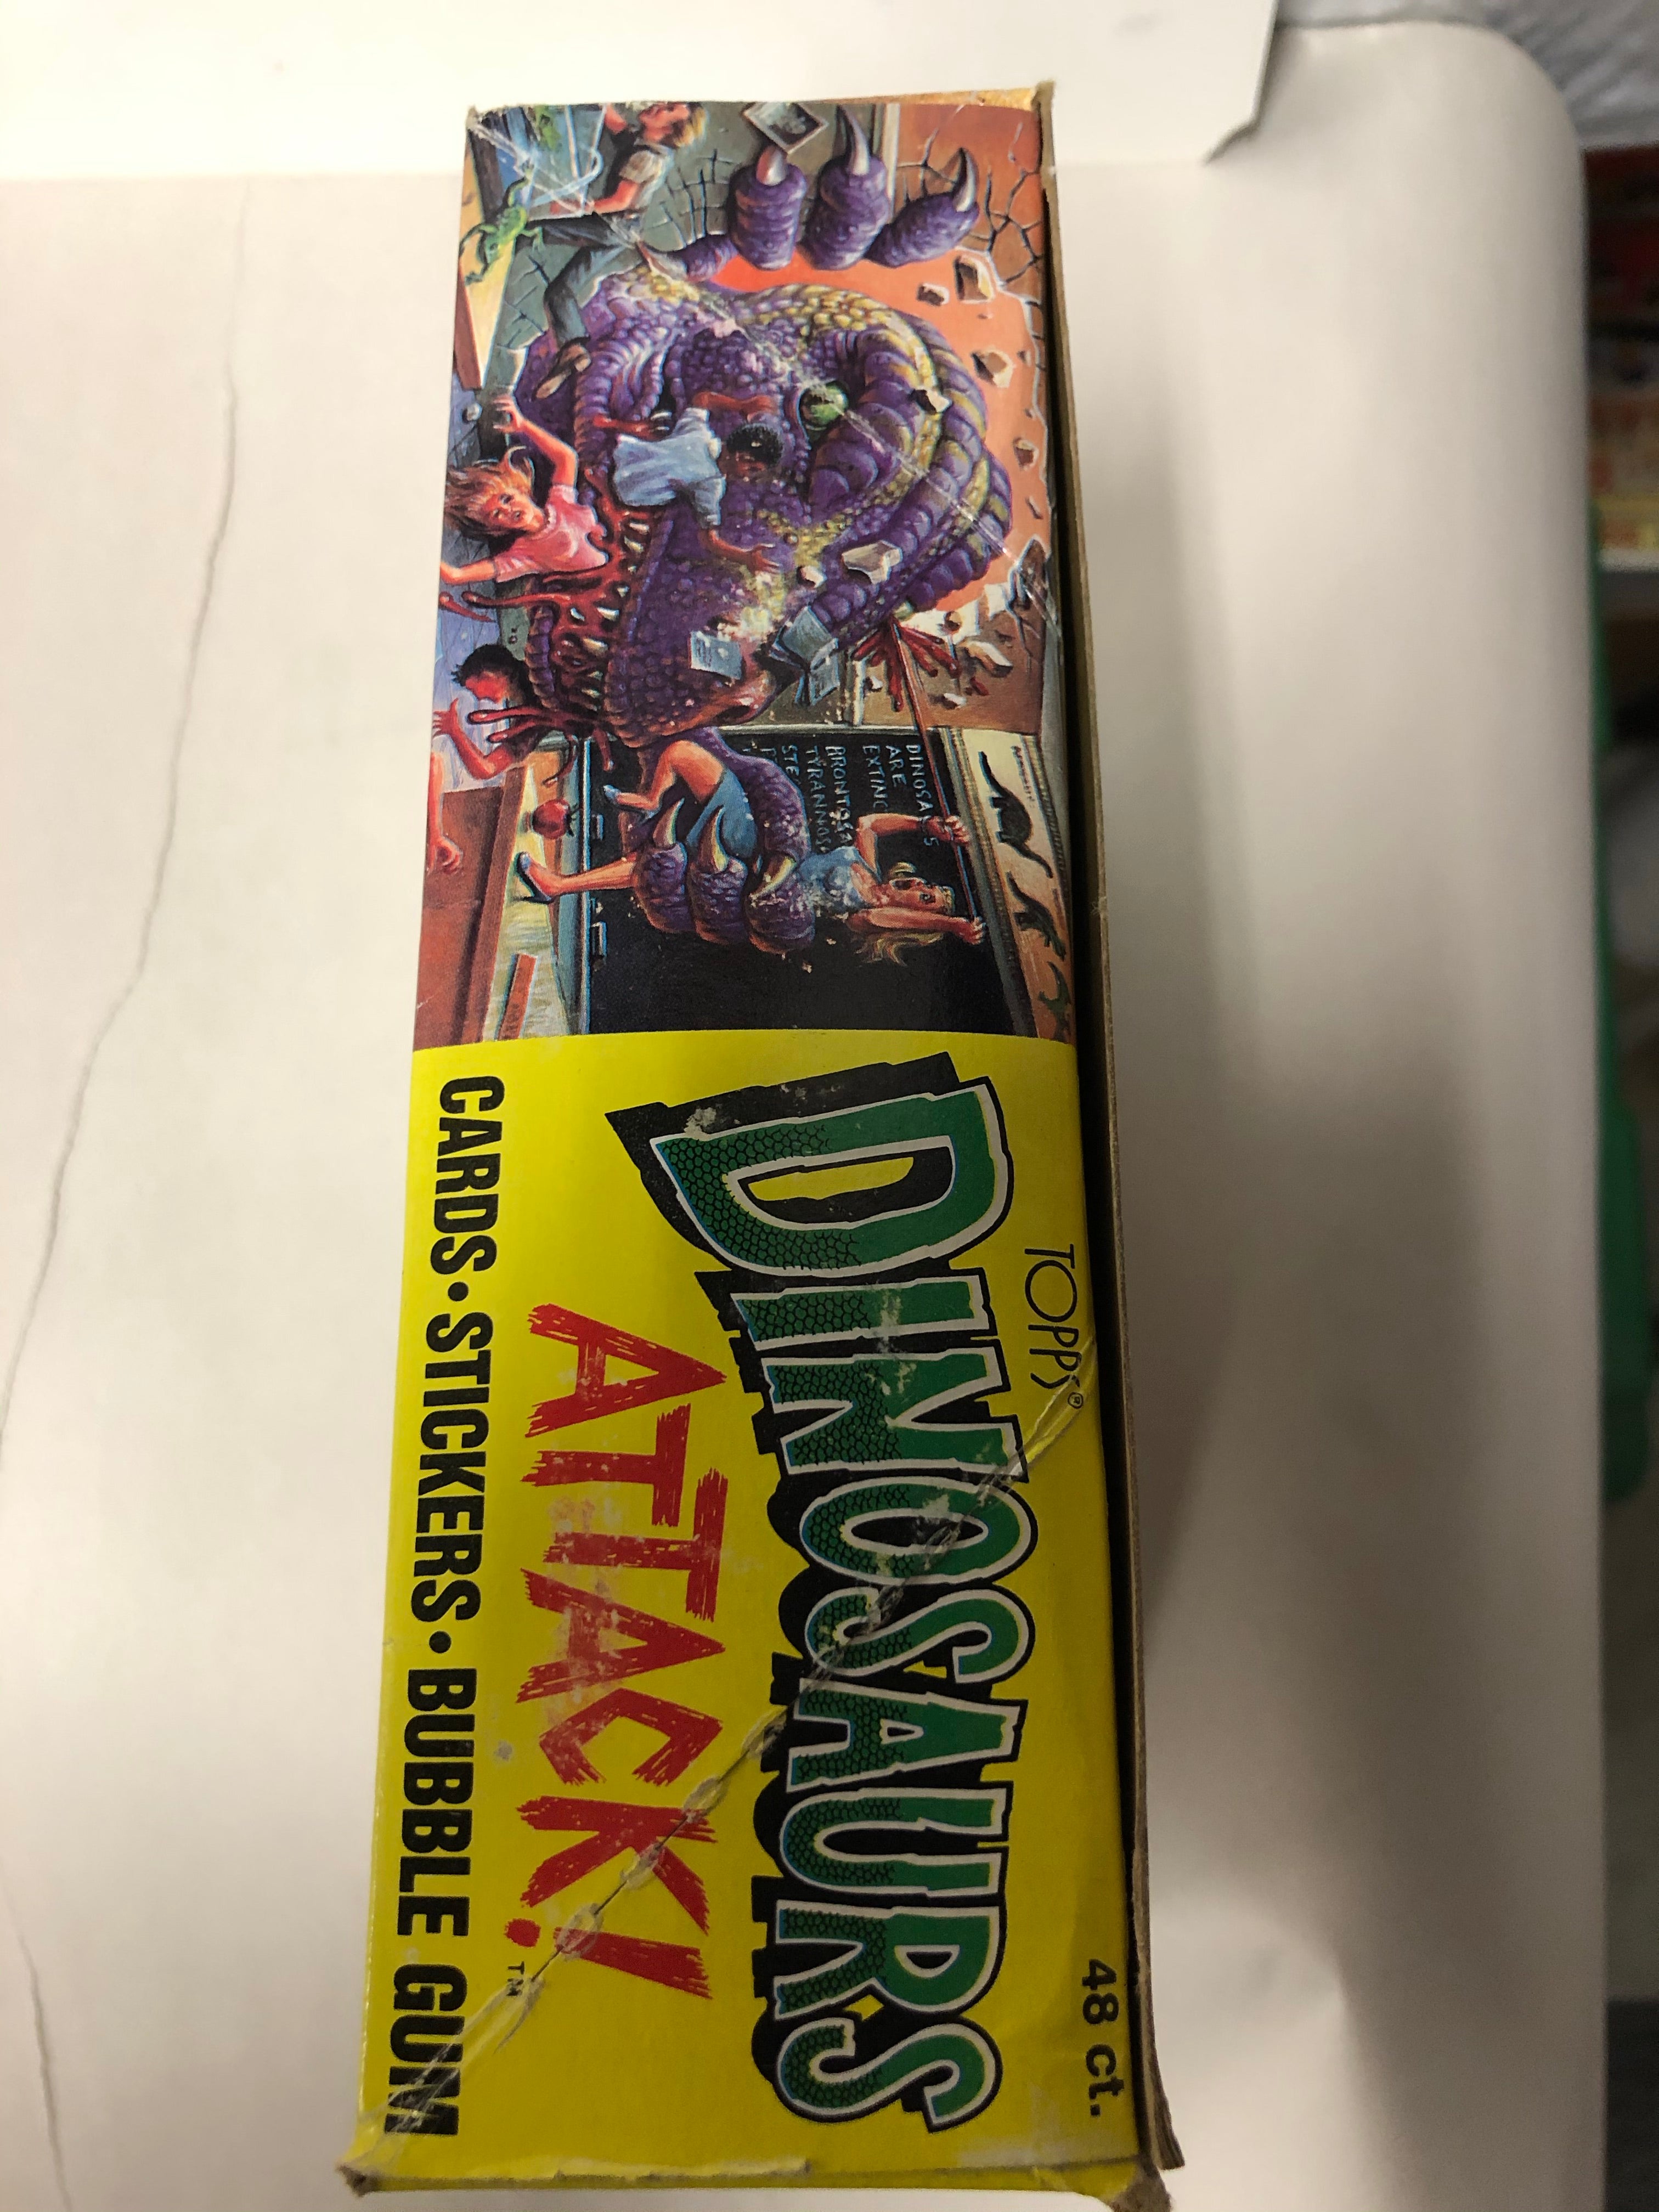 Dinosaurs Attack cards full box 1988